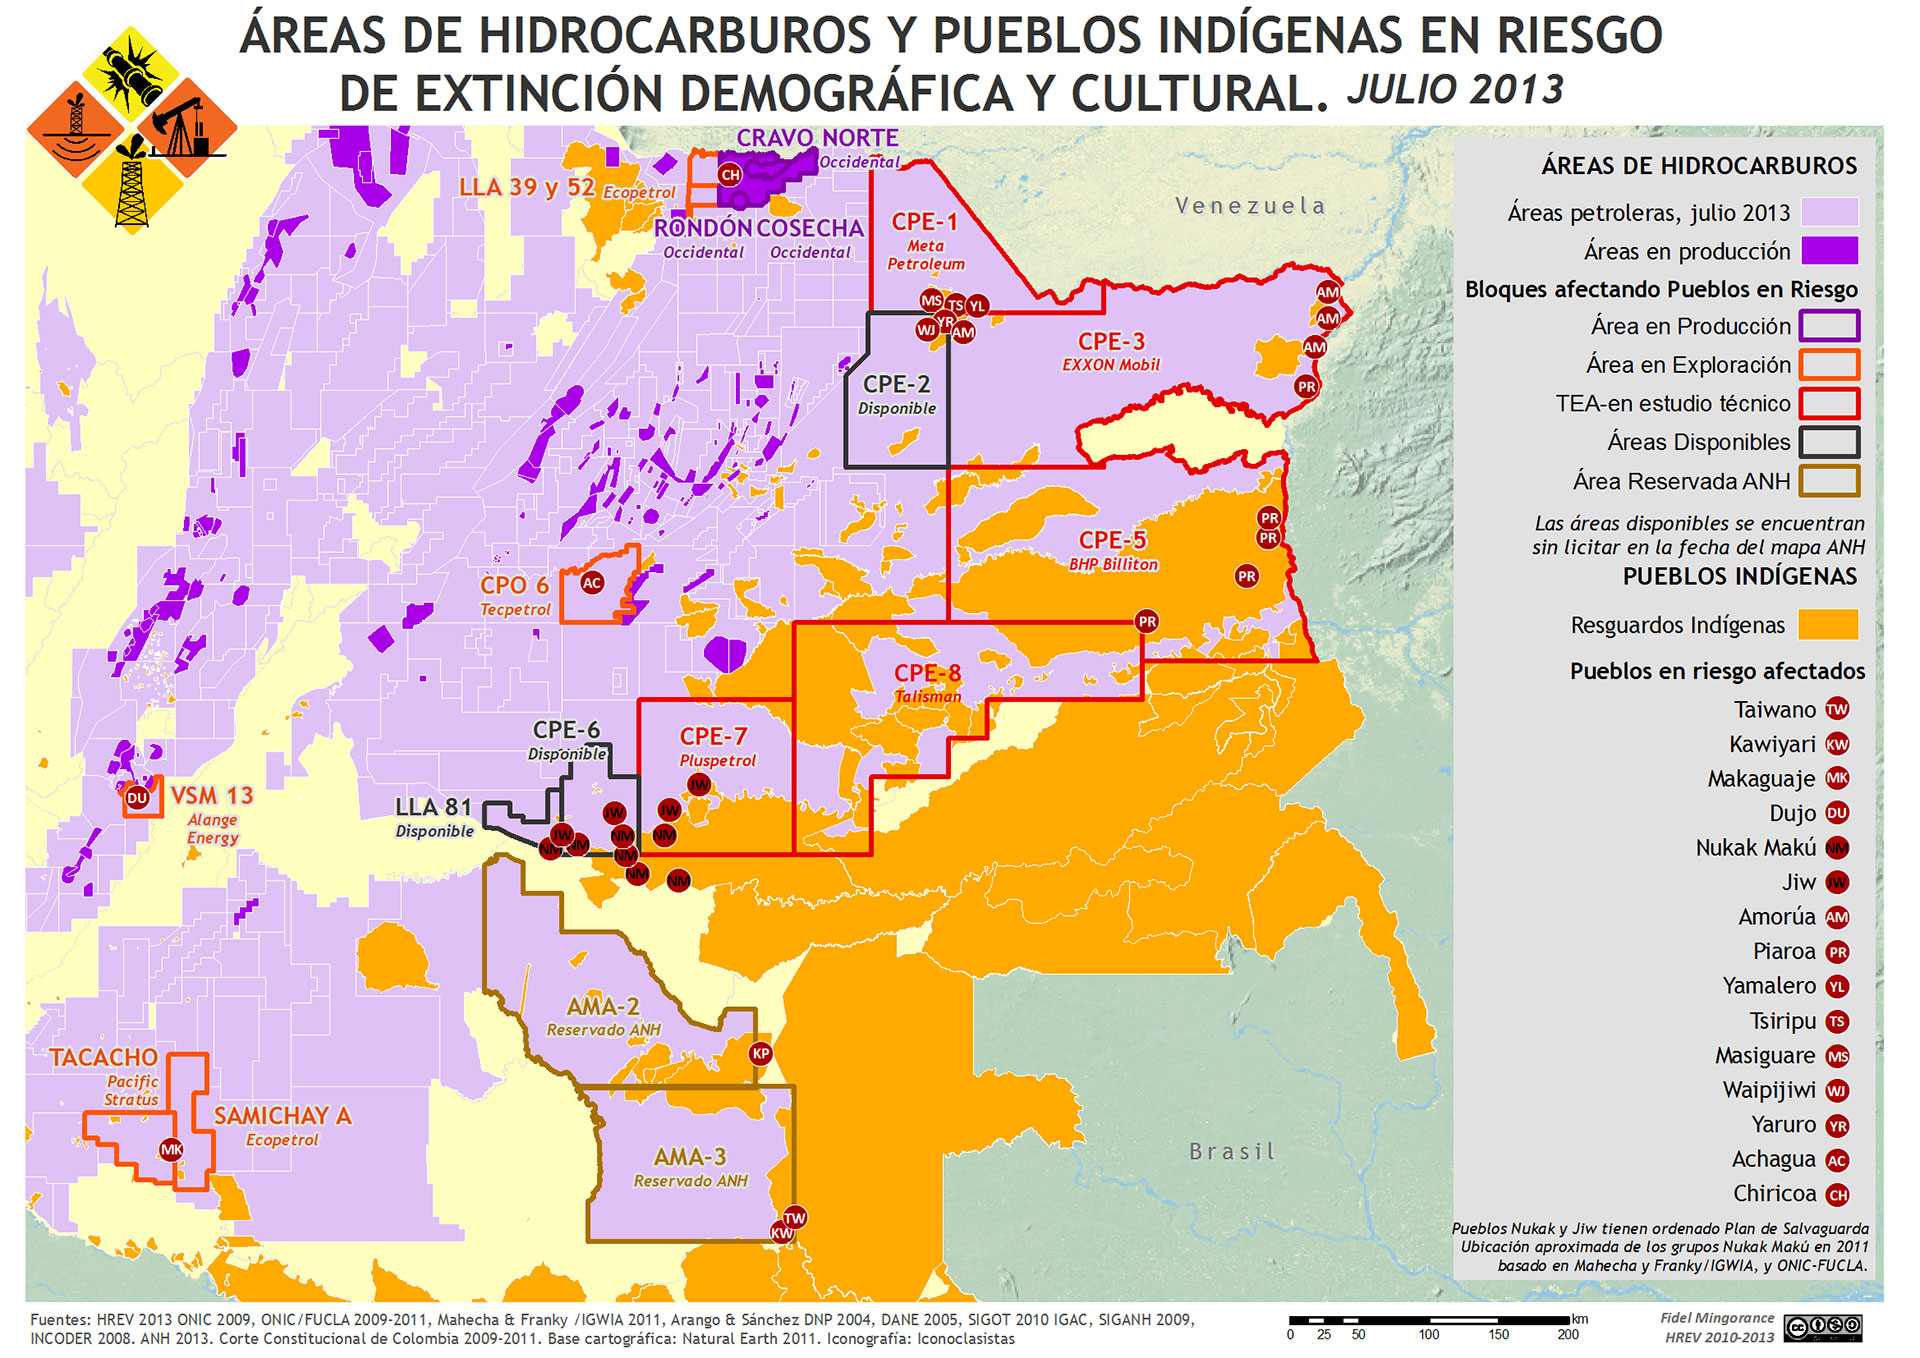 Pueblos indígenas en riesgo de extinción y Open Round 2010